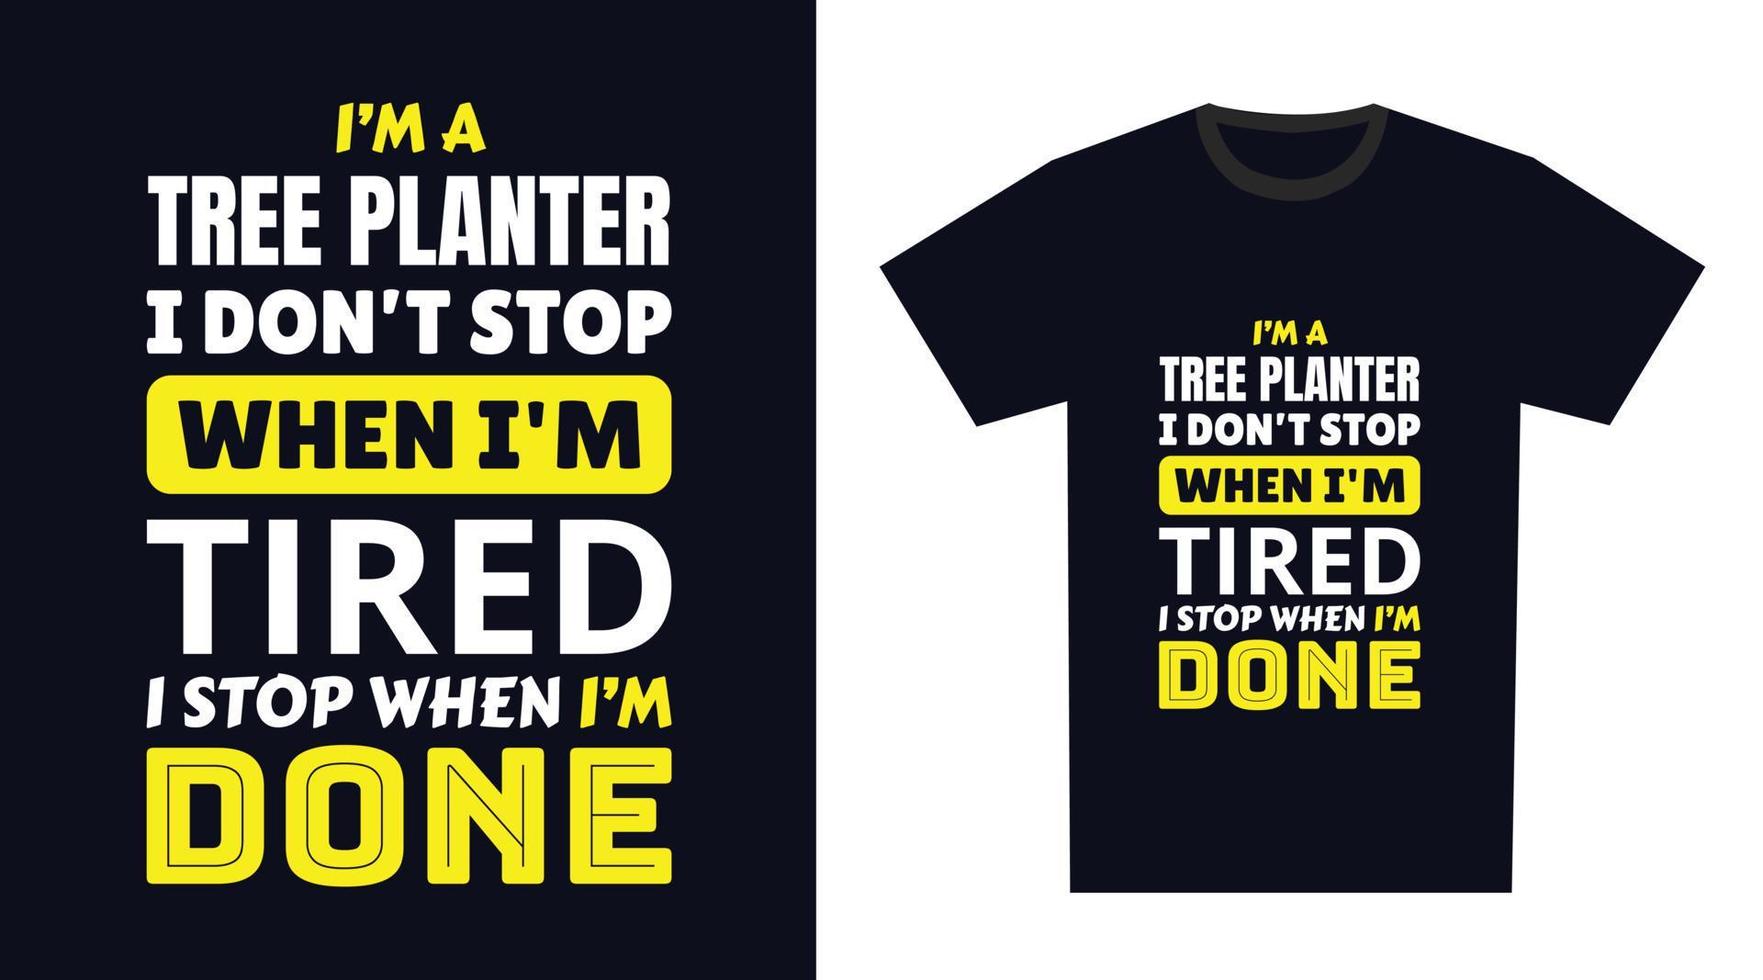 träd planter t skjorta design. jag 'm en träd planter jag inte sluta när jag är trött, jag sluta när jag är Gjort vektor